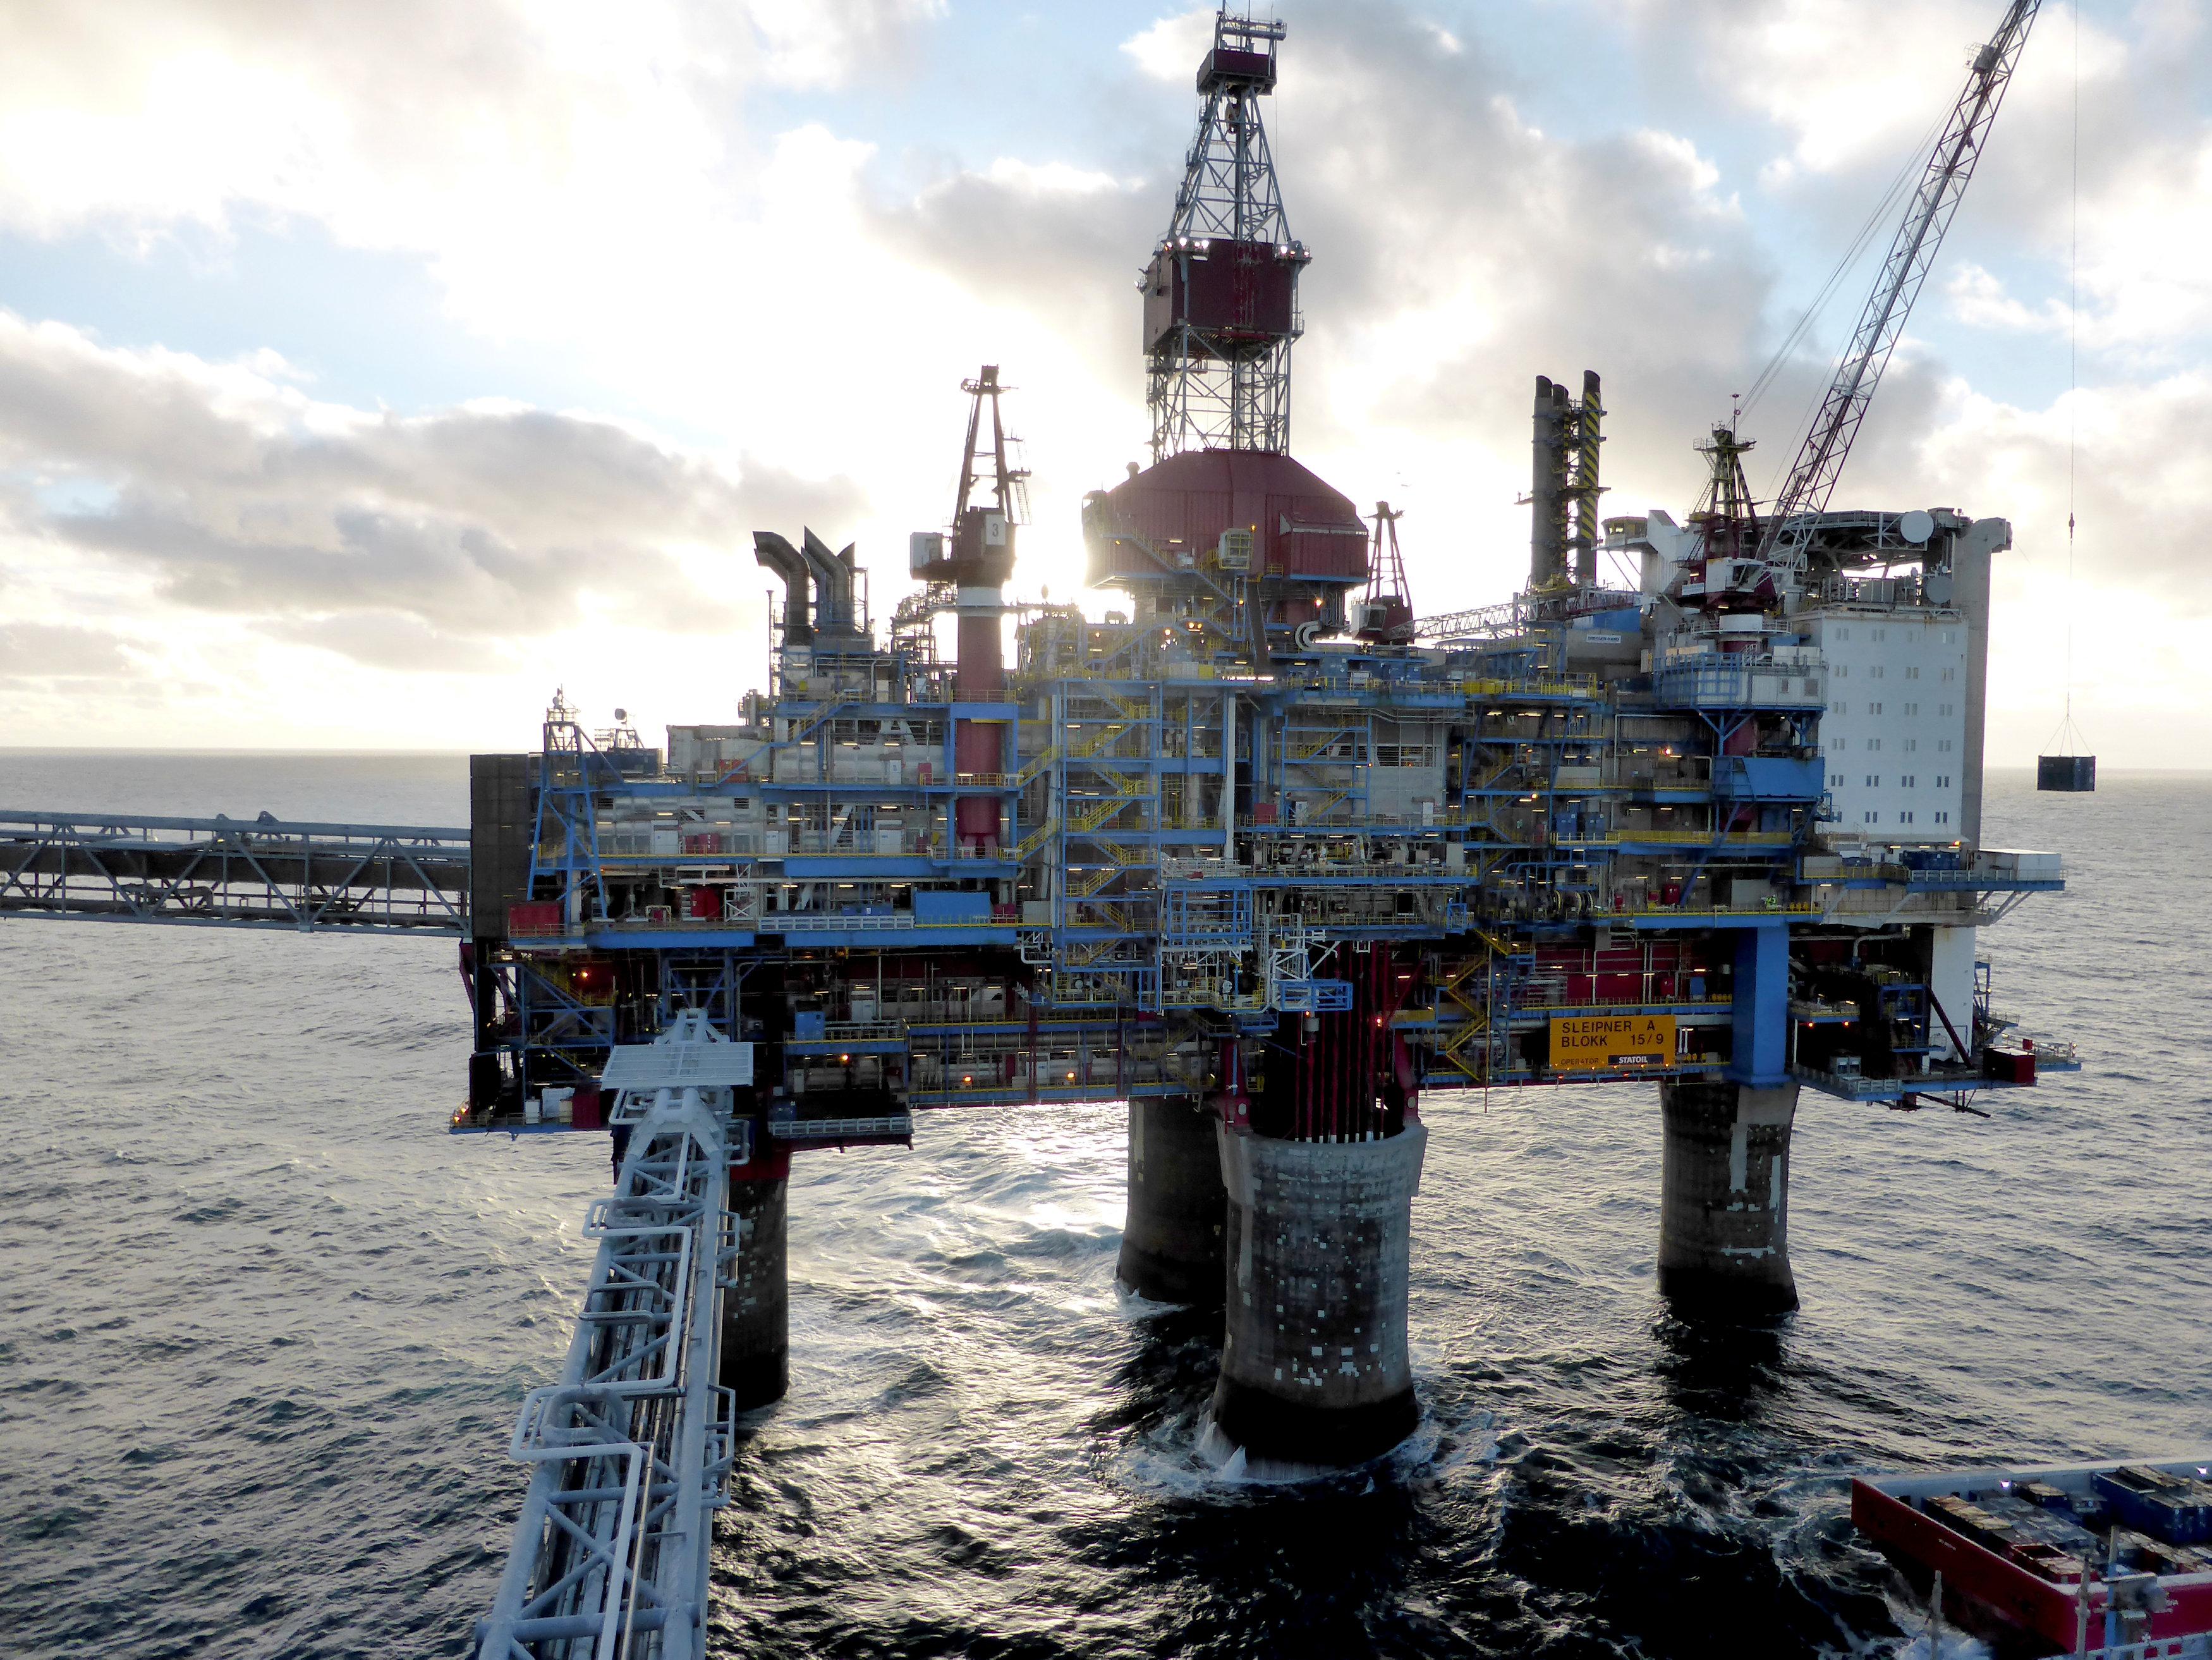 Harga minyak jatuh karena penguncian China, saham menyimpang GMA News Online